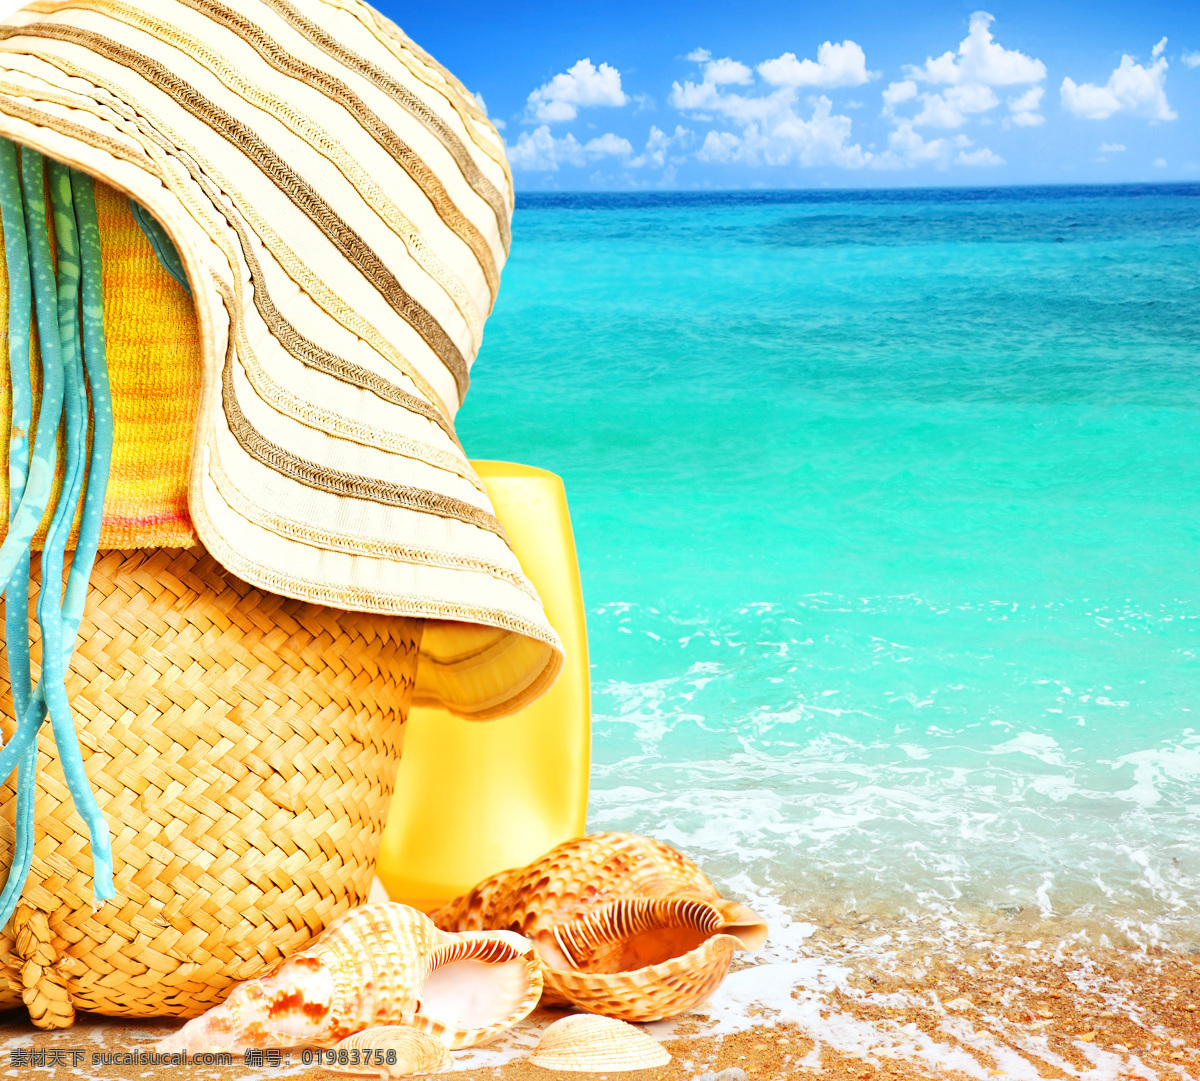 美丽沙滩背景 夏日海滩 沙滩风景 美丽海滩 美丽风景 大海 海面 草帽 防晒霜 海螺 海洋海边 自然景观 青色 天蓝色